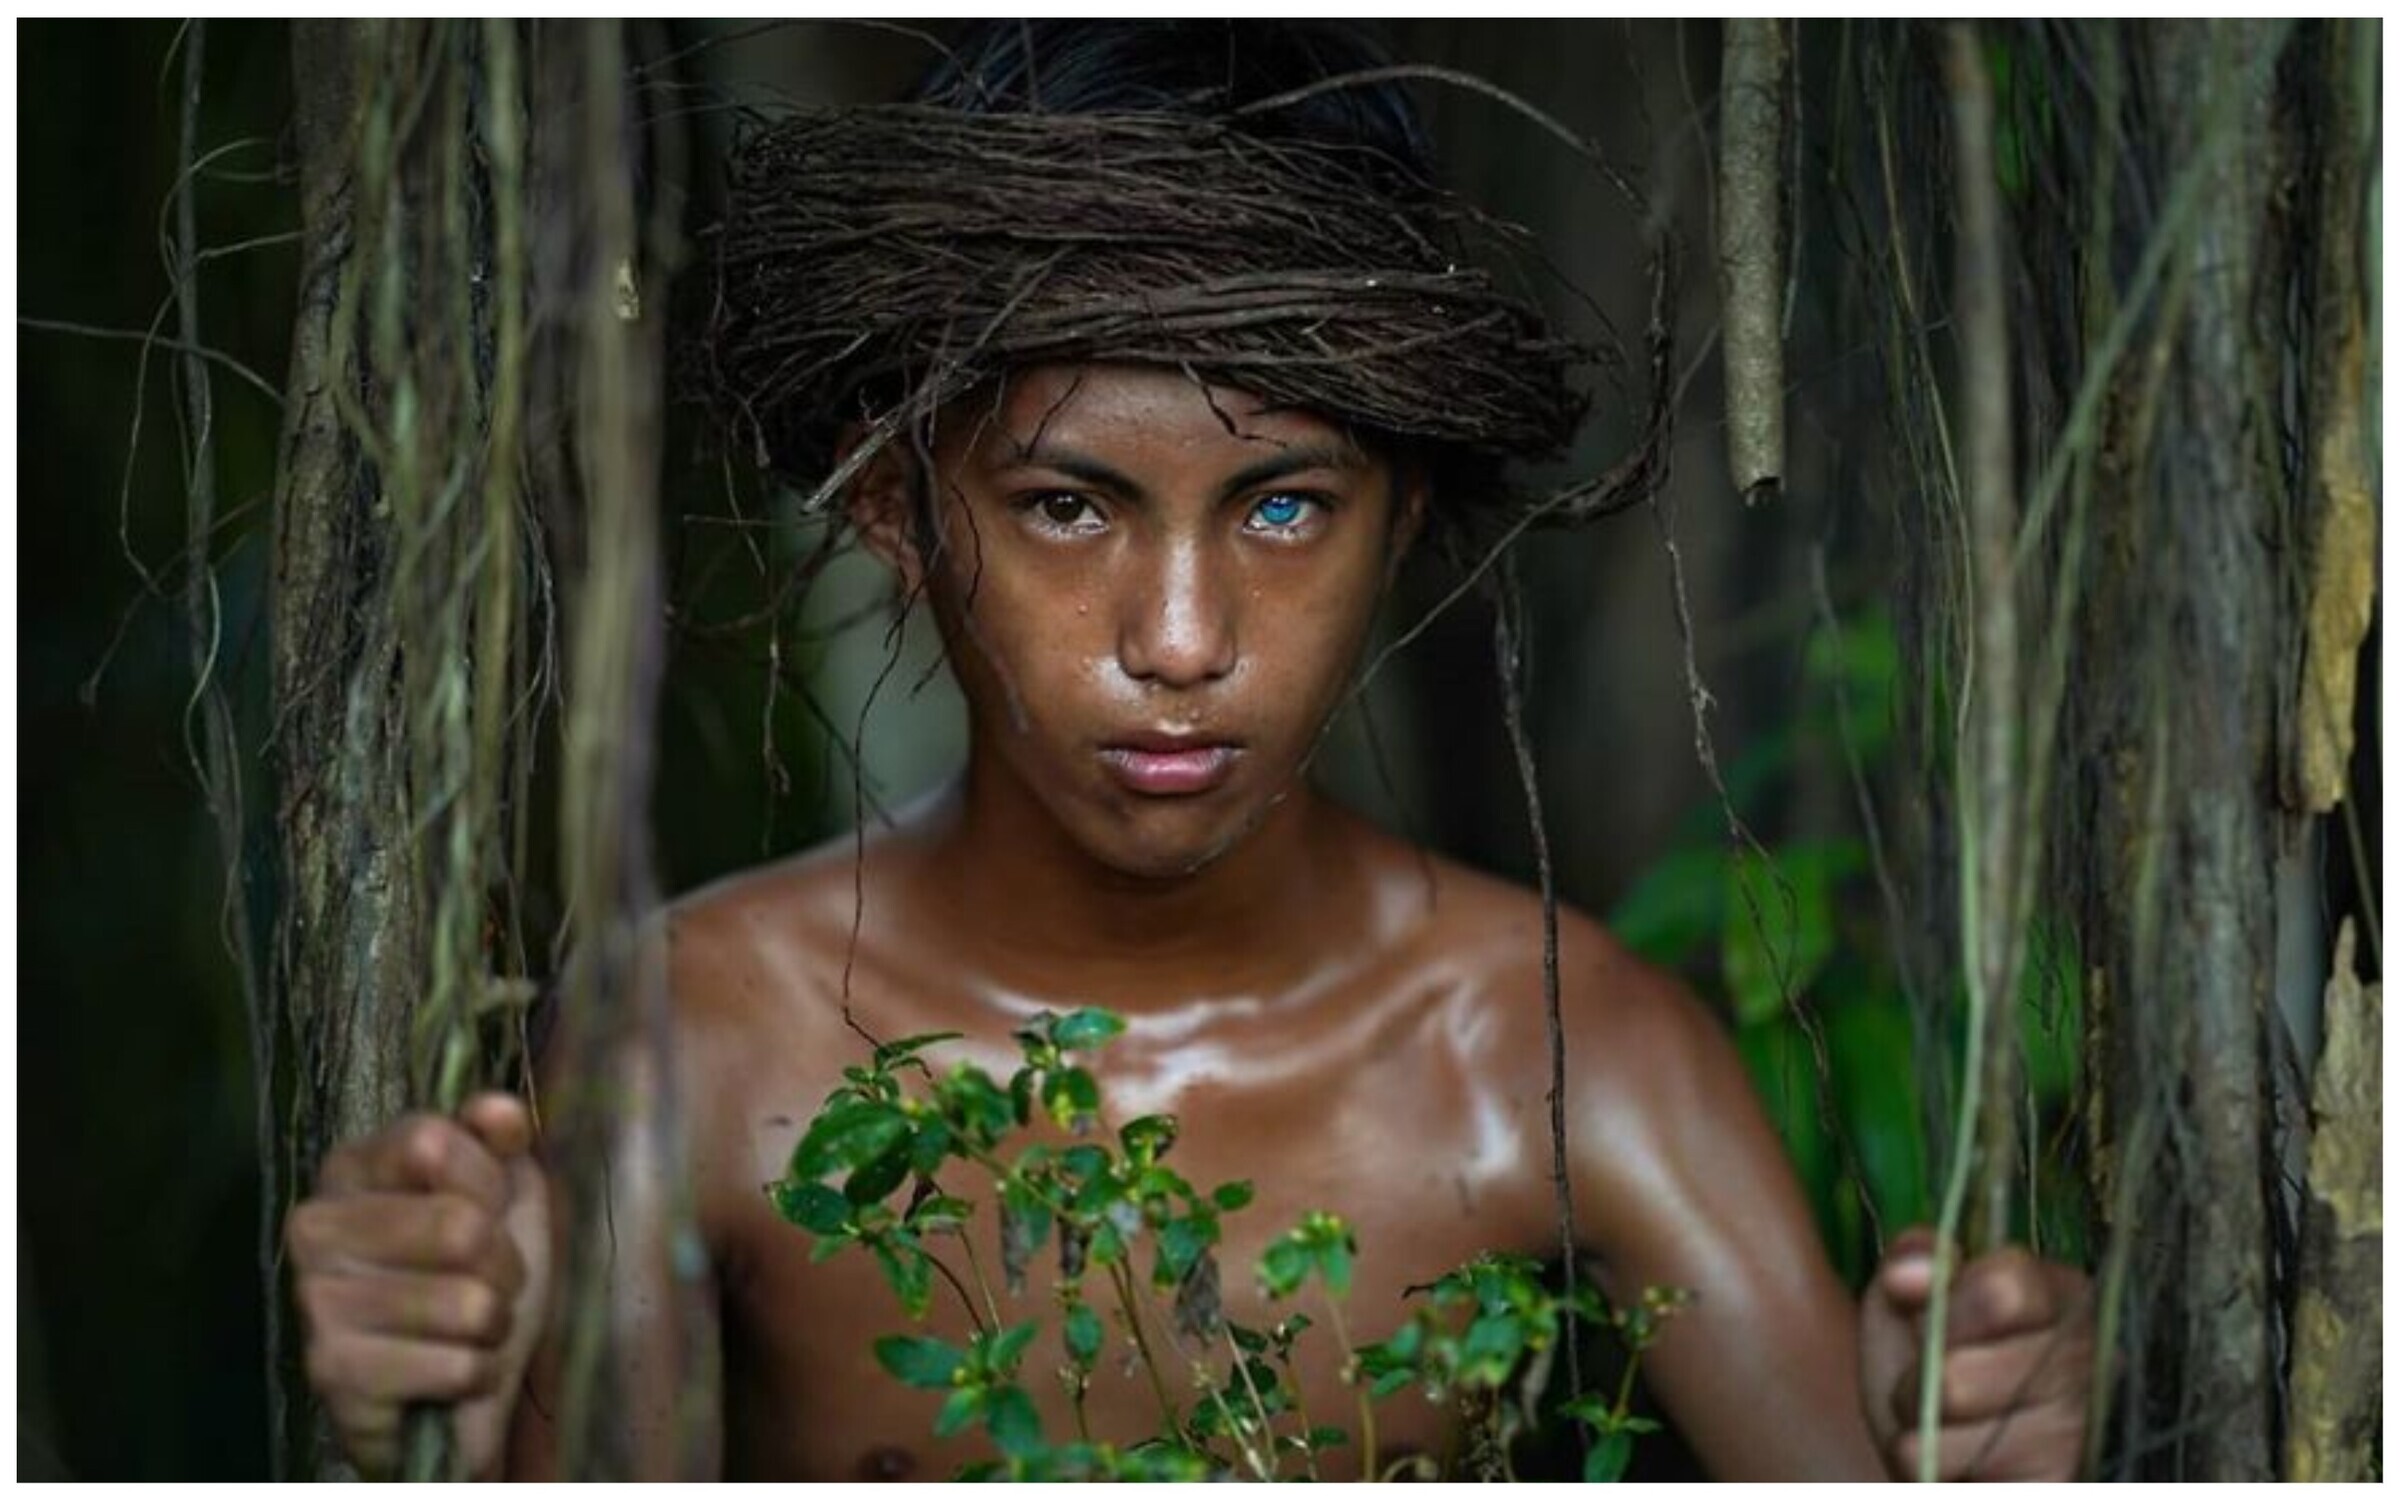 Женщины живущие на острове. Индонезия племя бутунг. Бразилия джунгли неконтактные племена. Племя бутон на острове бутунг Индонезии.